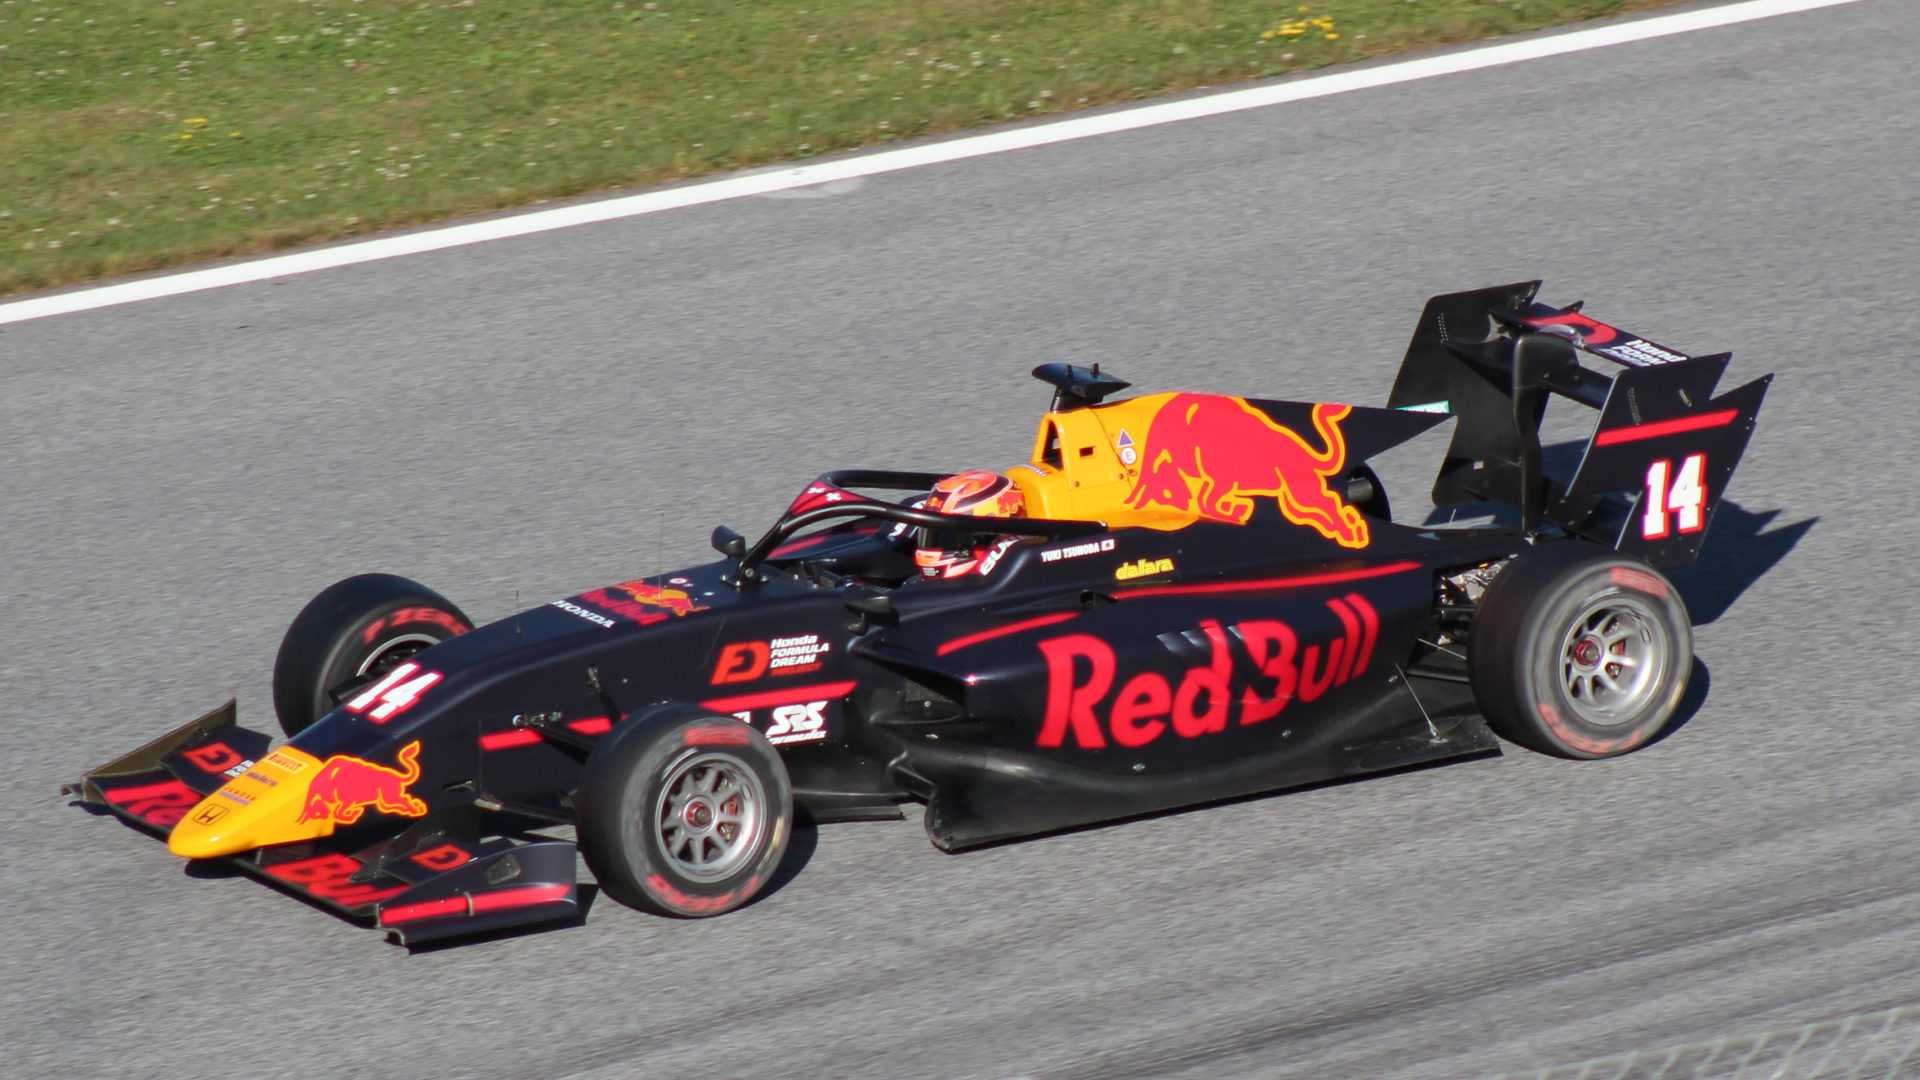 Le patron de F2 pense que le Red Bull Junior Tsunoda est plus rapide que Mick Schumacher